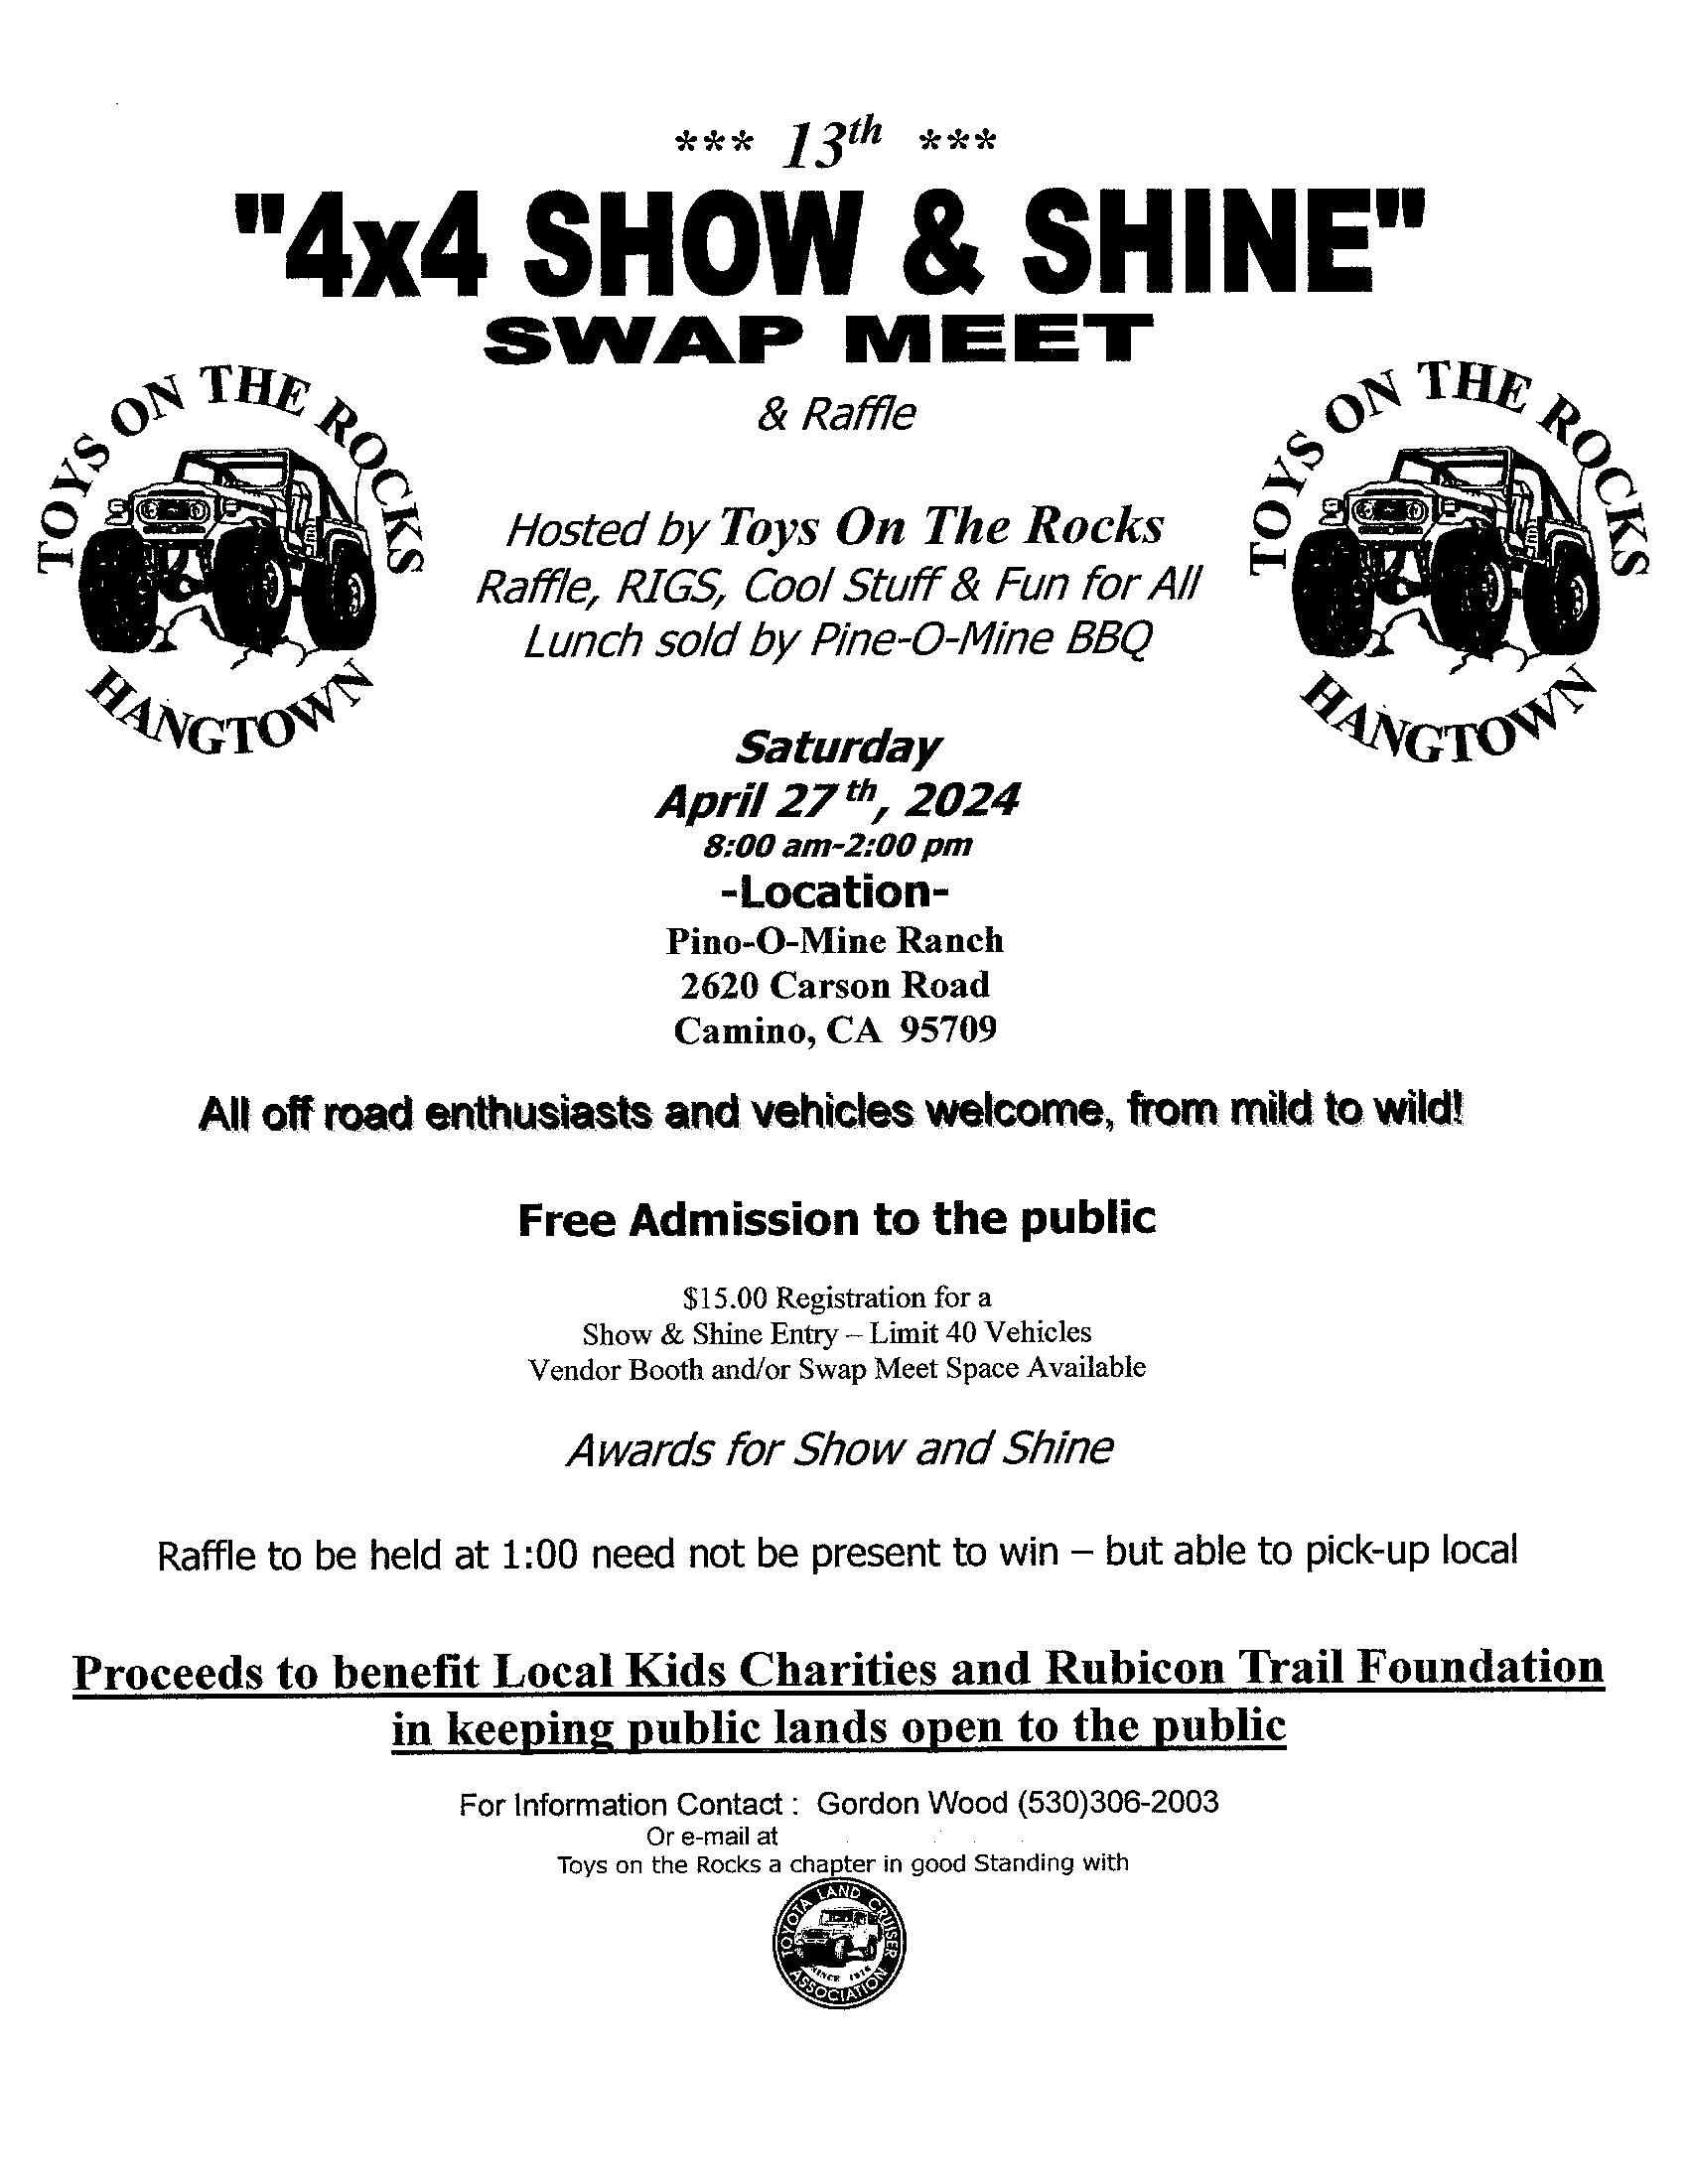 4X4 Show & Shine / Swap Meet Placerville, Ca.